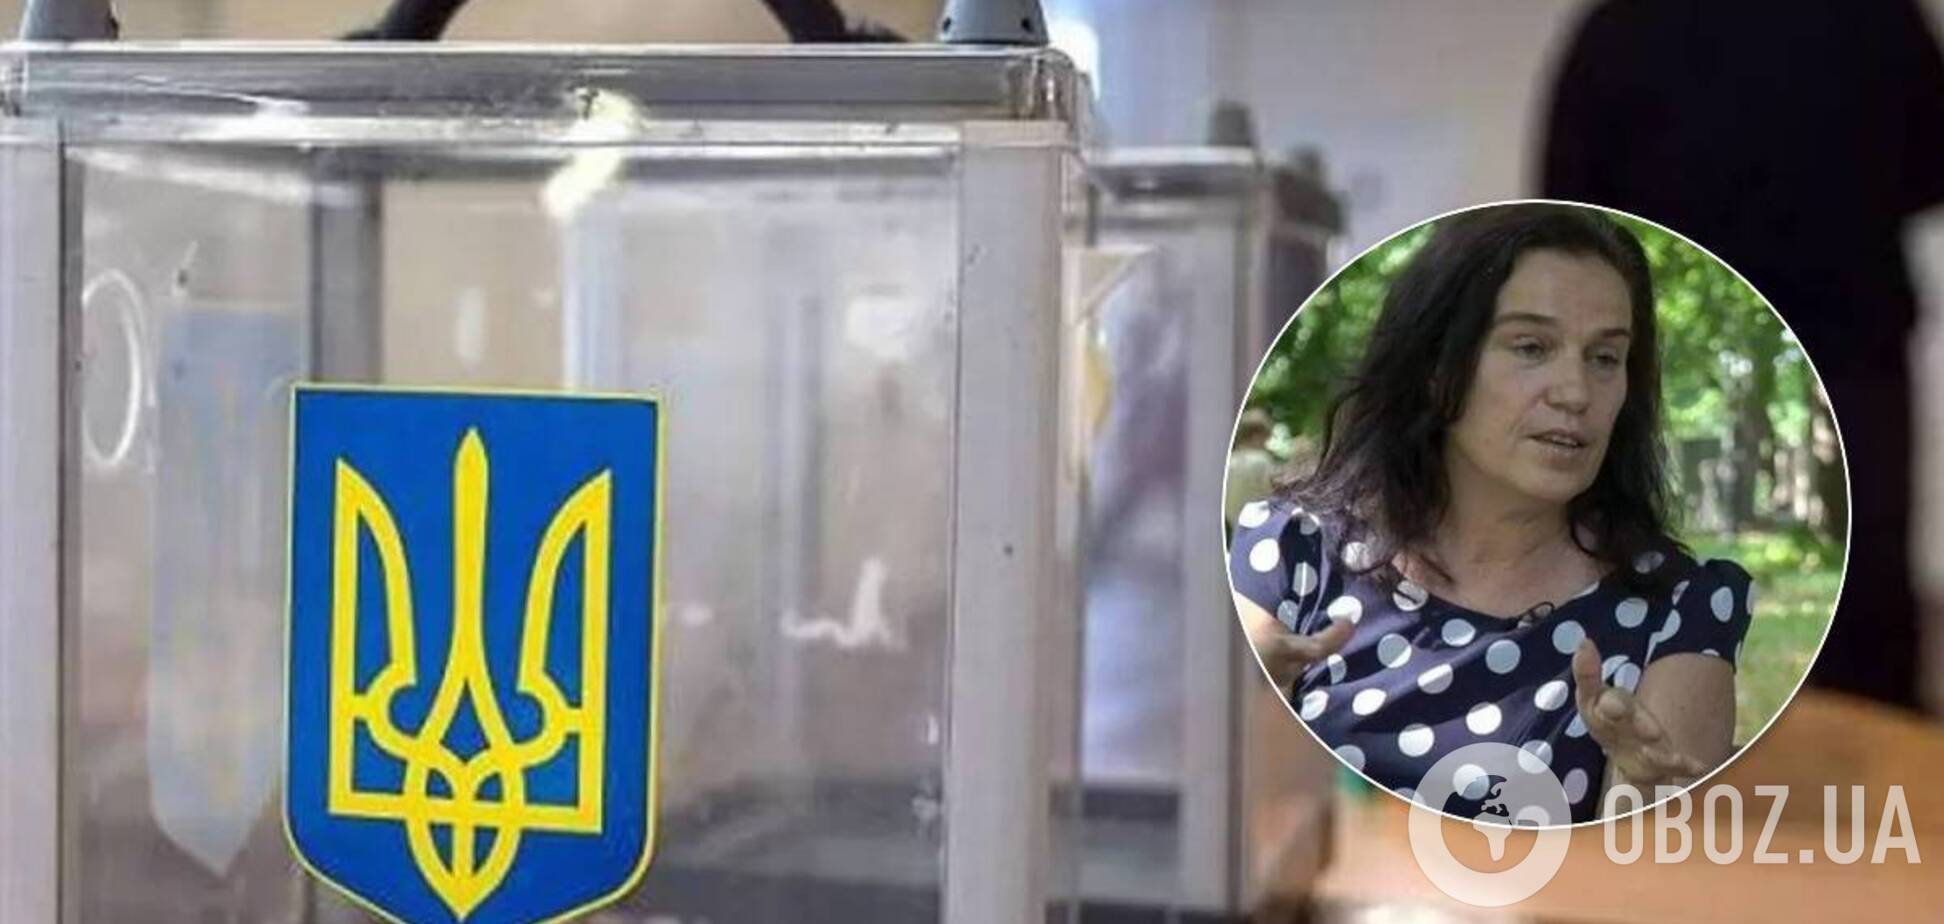 Евгения Йепес-Виньеса считает, что выборы на Донбассе сейчас нереально проводить